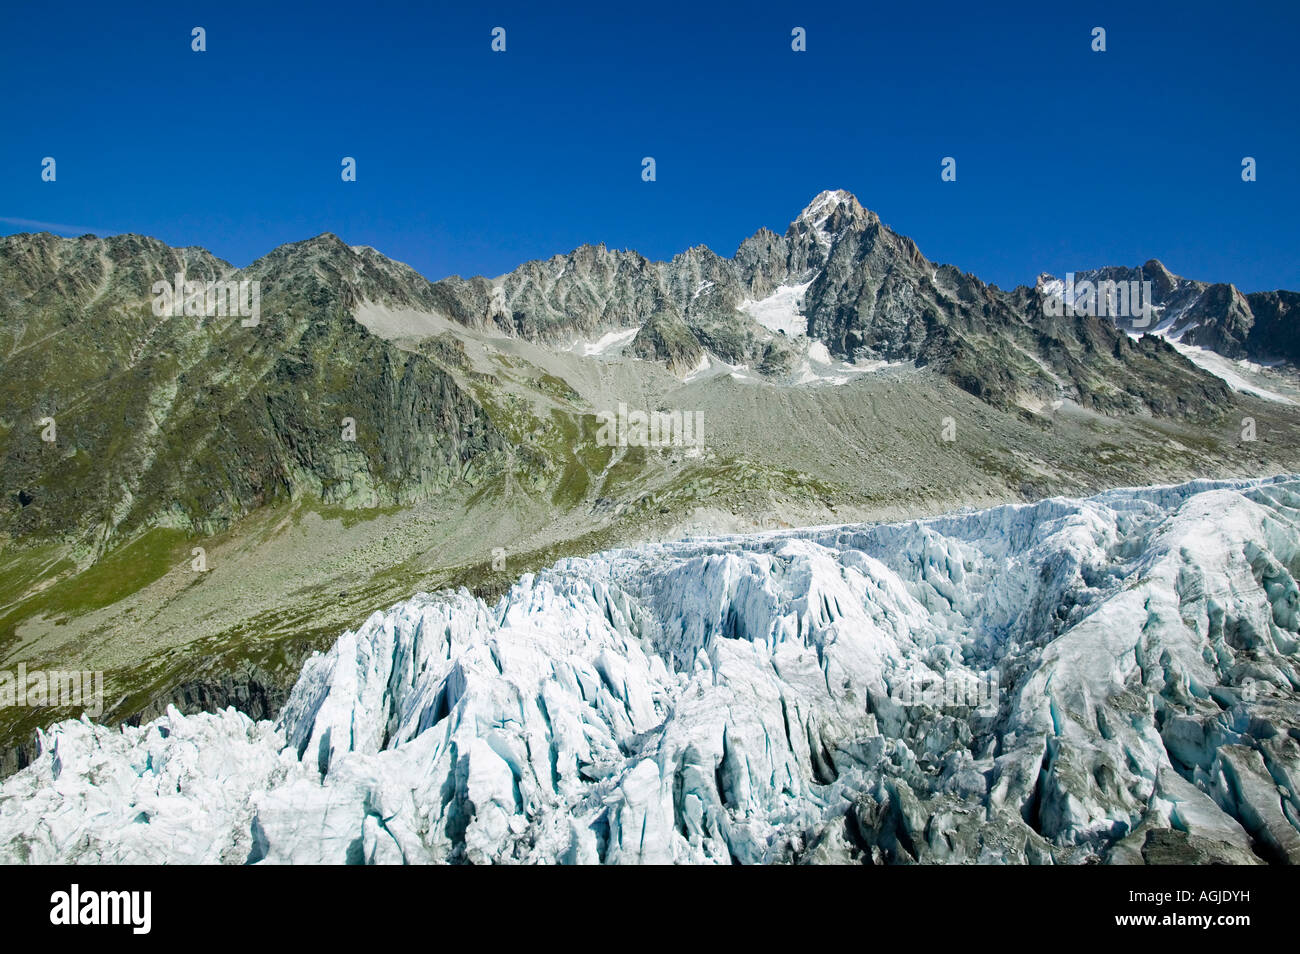 Il muso del ghiacciaio di Argentiere come la maggior parte dei ghiacciai alpini si è ritirata rapidamente a causa del riscaldamento globale Chamonix Francia Foto Stock